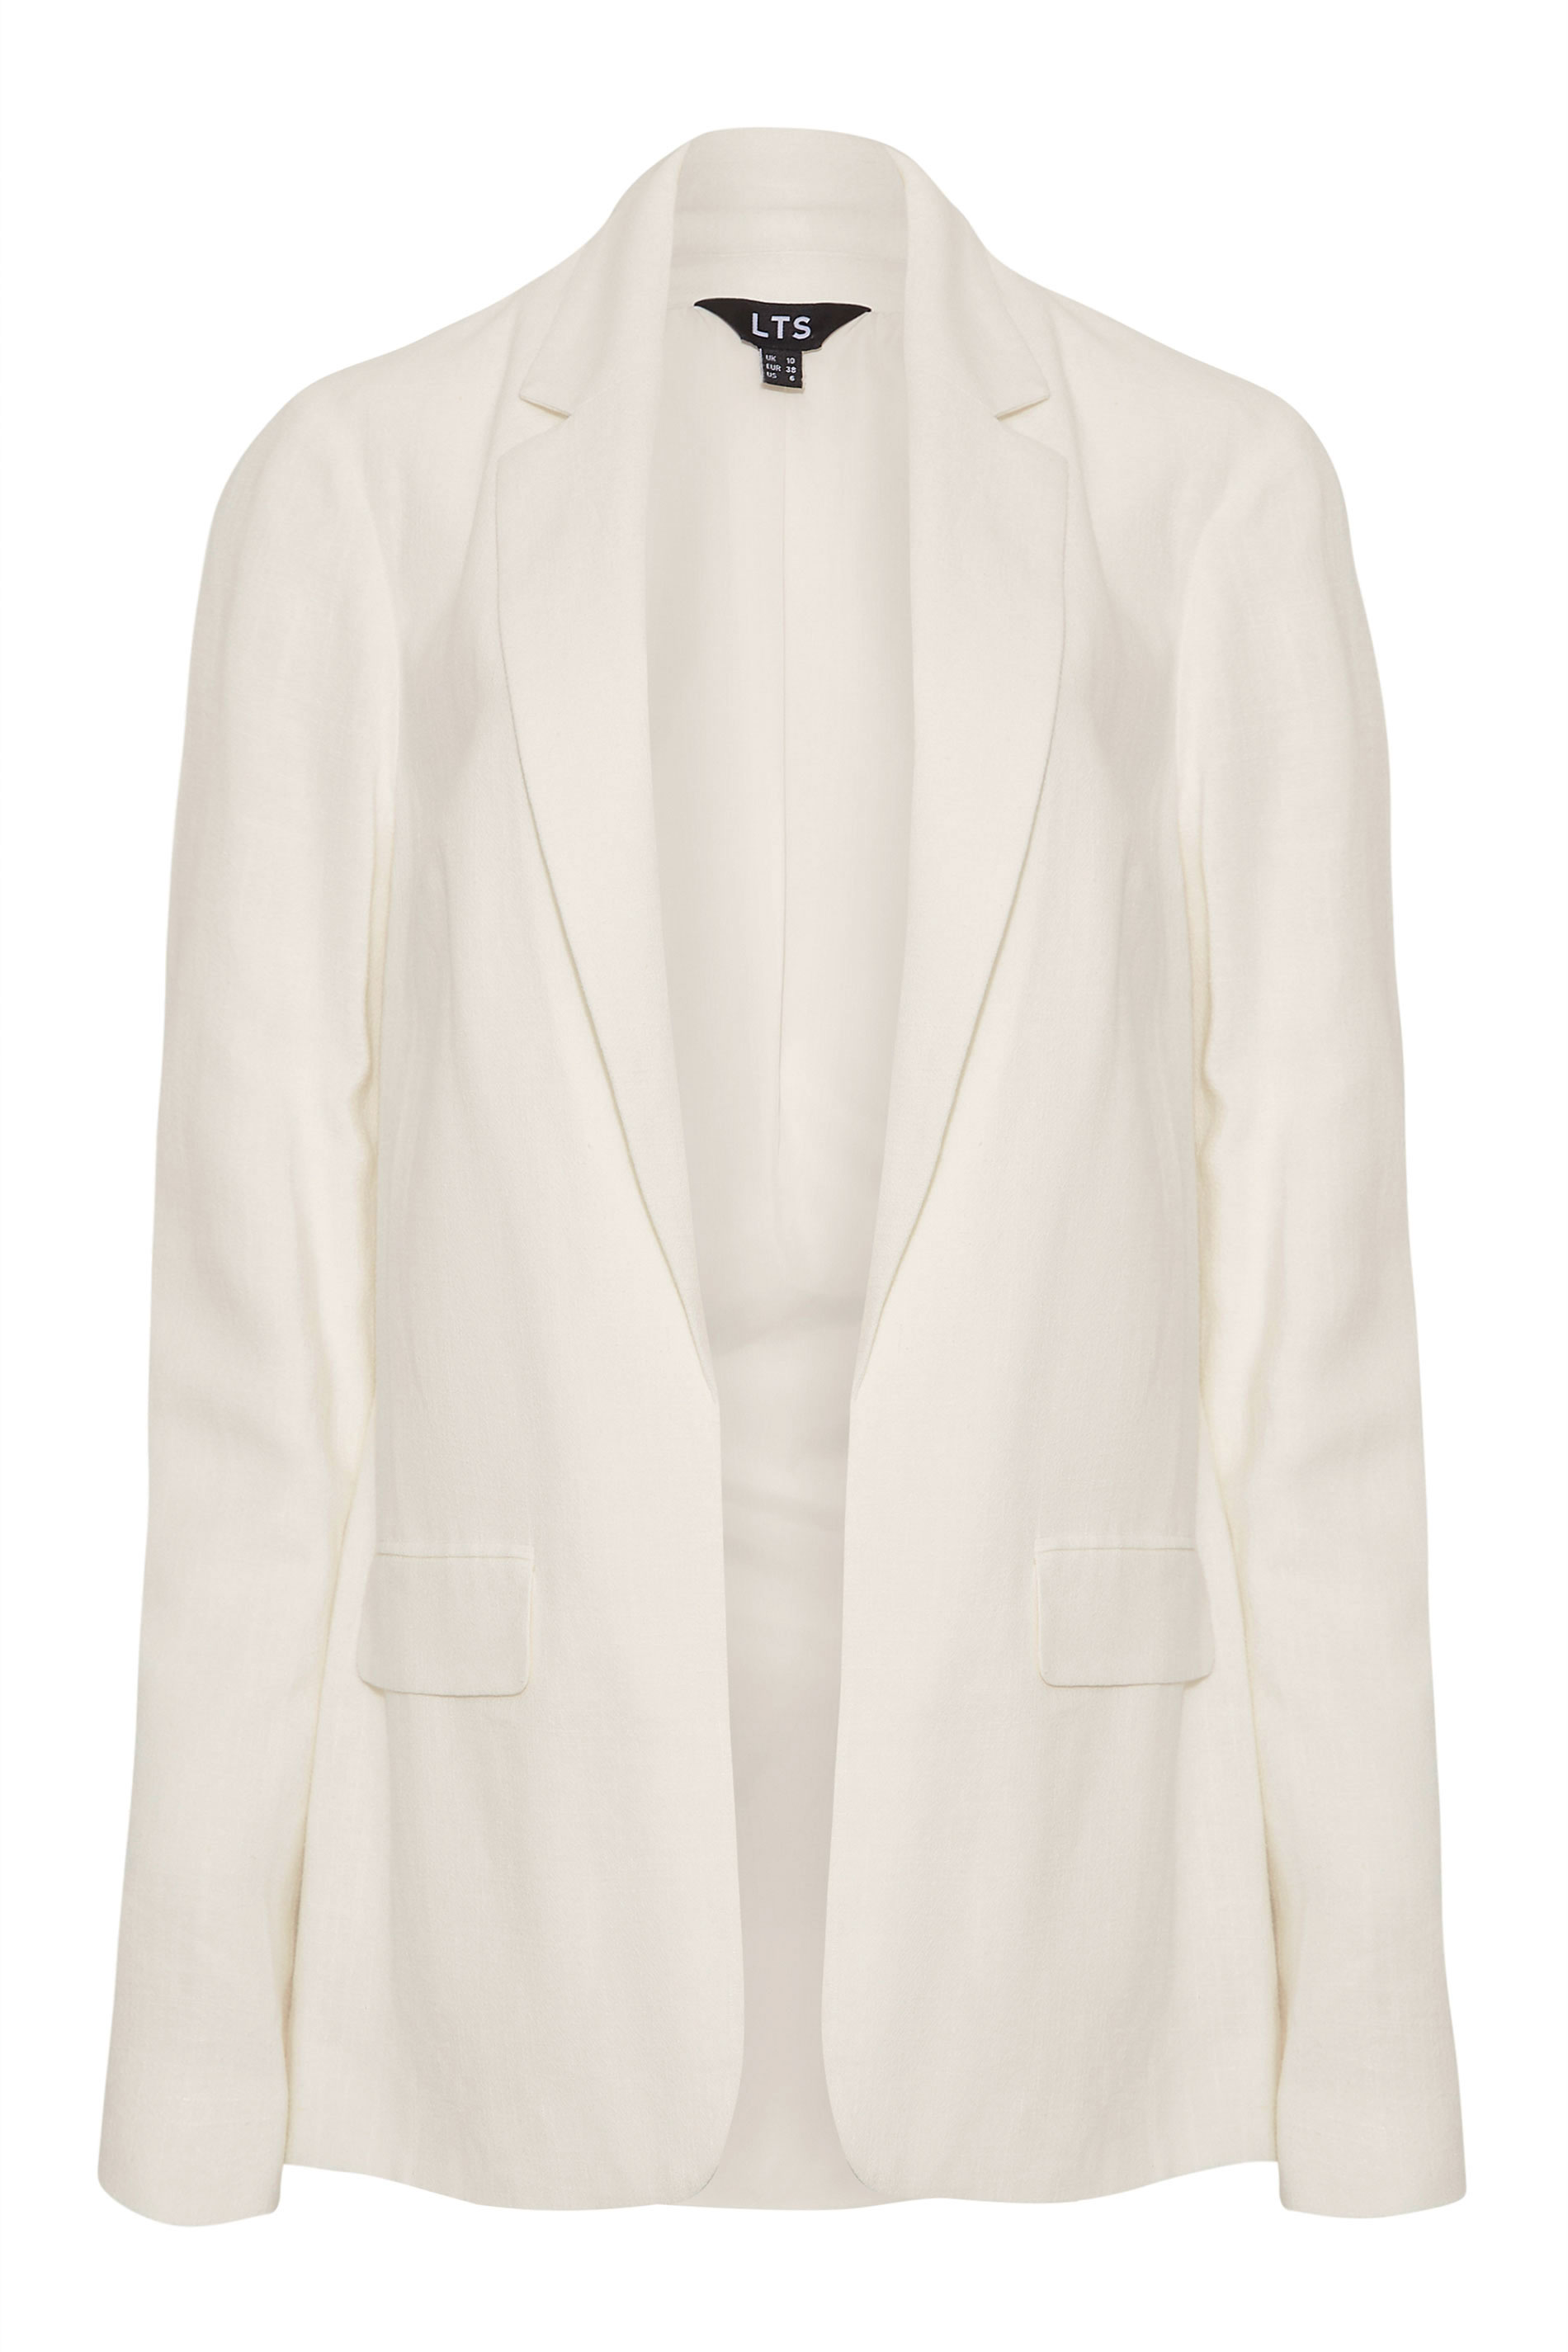 LTS Tall Women's White Linen Blend Blazer | Long Tall Sally